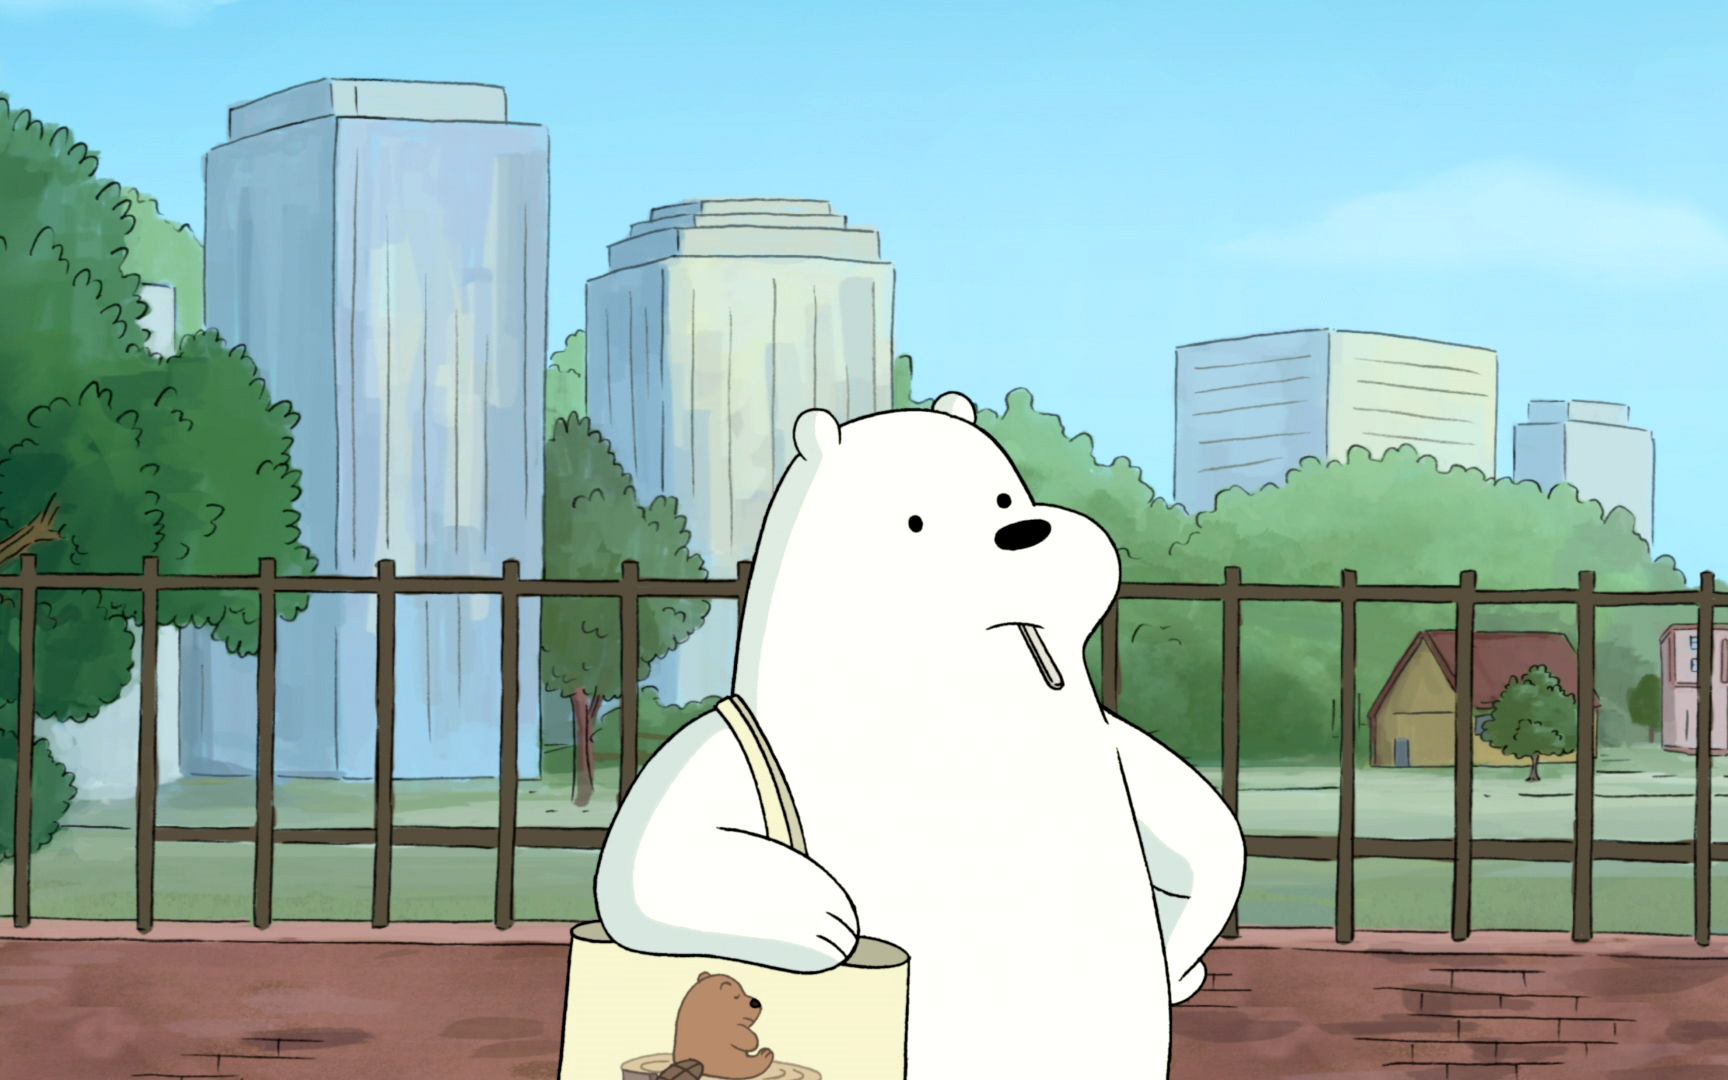 【咱们裸熊】Ice Bear 白熊老公的电脑壁纸 4 - 哔哩哔哩